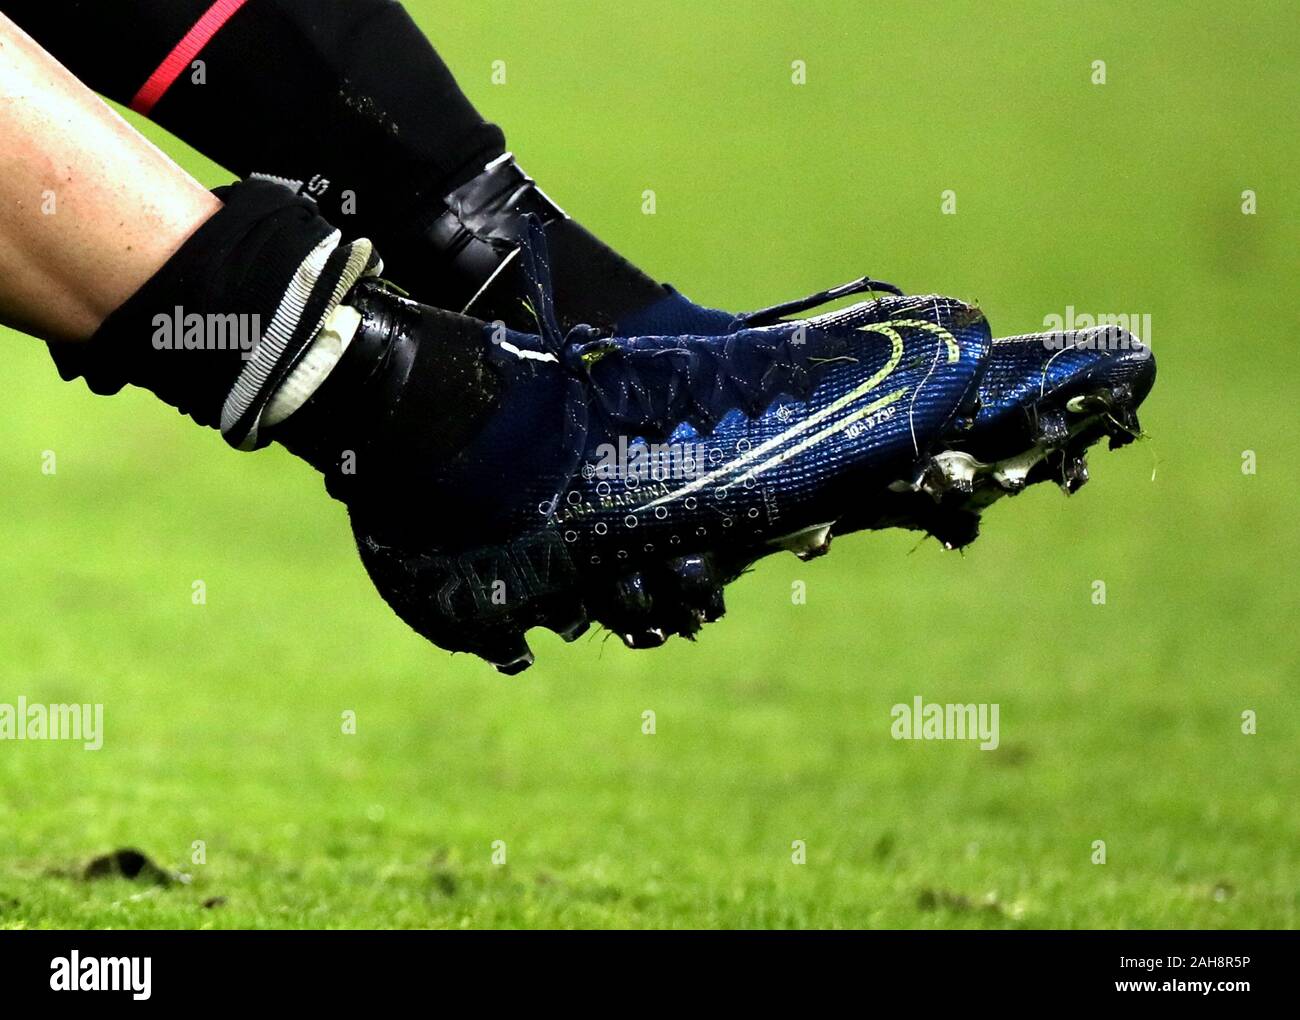 Turin, ITALIE - 26 novembre 2019 : détail de la chaussure Nike Mercurial Dream Speed Superfly 7 Elite portée par Cristiano Ronaldo lors de l'UEFA Champions L. Banque D'Images